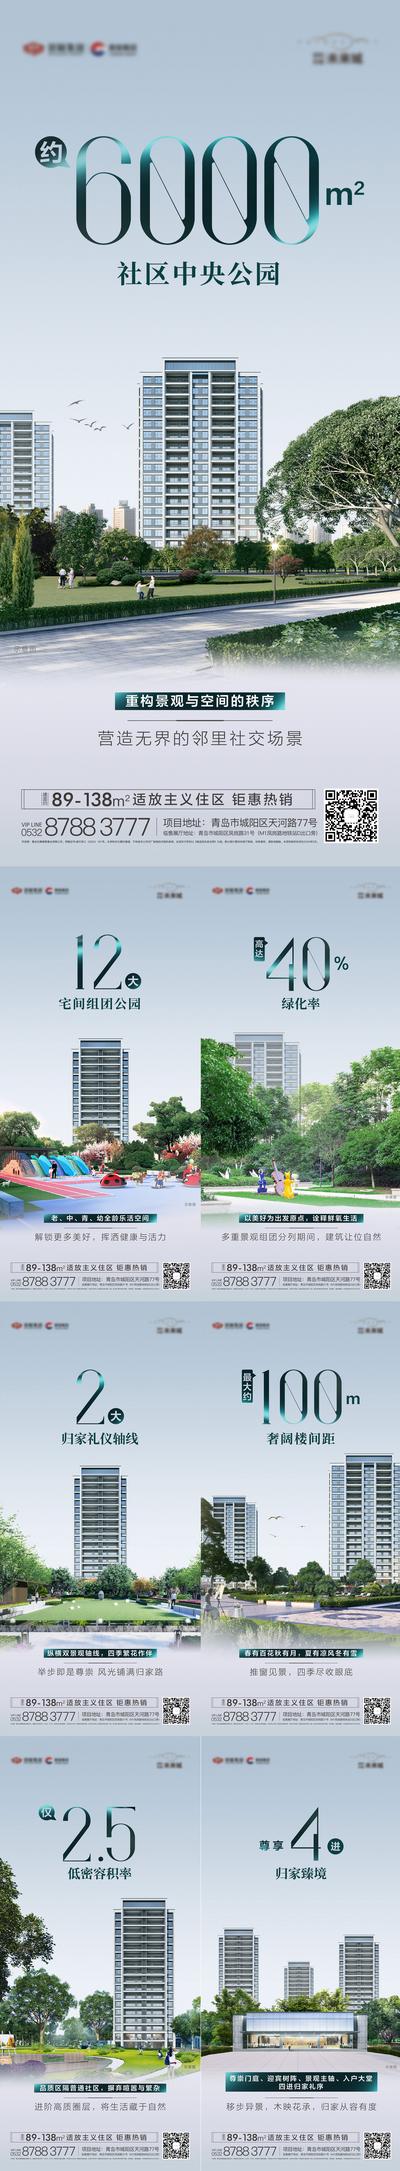 南门网 海报 地产 价值点 简洁 园林 景观 公园 绿化 容积率 轴线 大门 休闲 楼间距 空间 自然